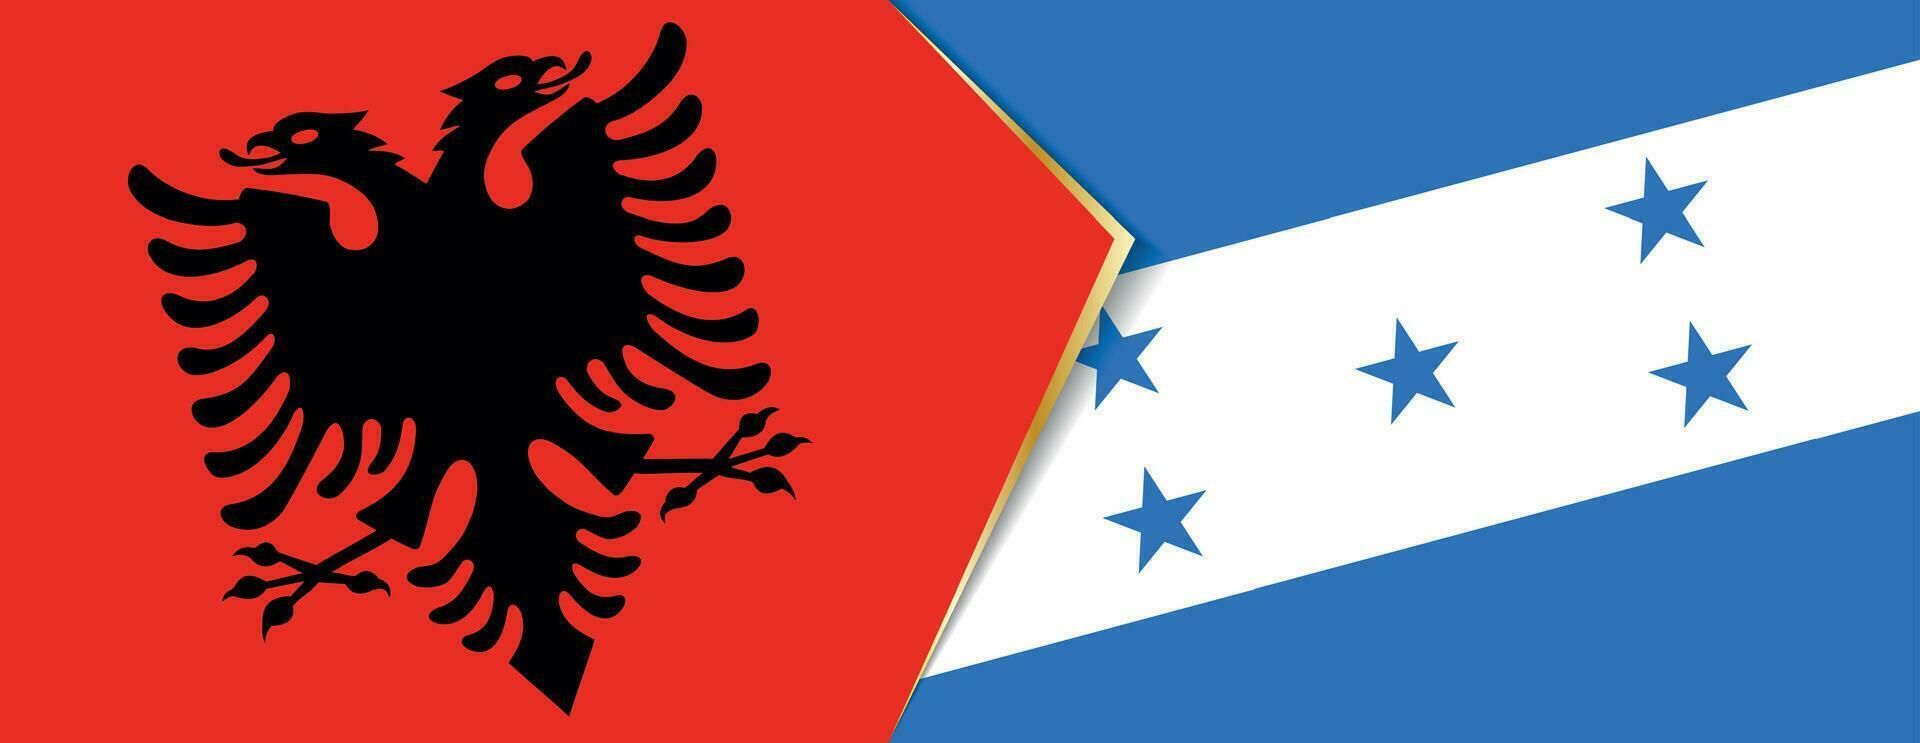 Albania y Honduras banderas, dos vector banderas